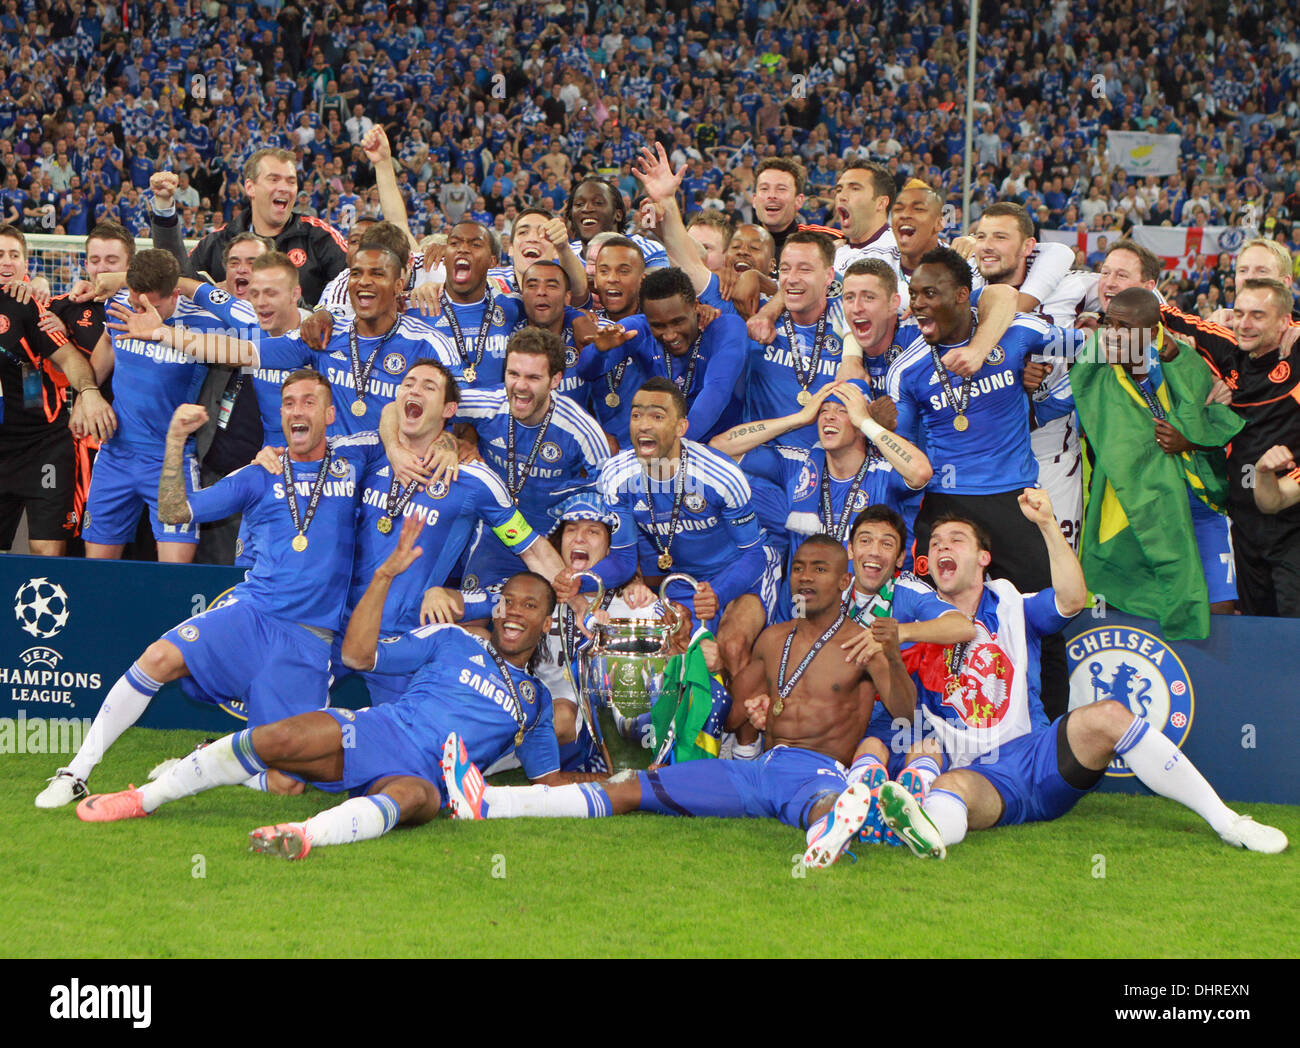 2012 champions league final